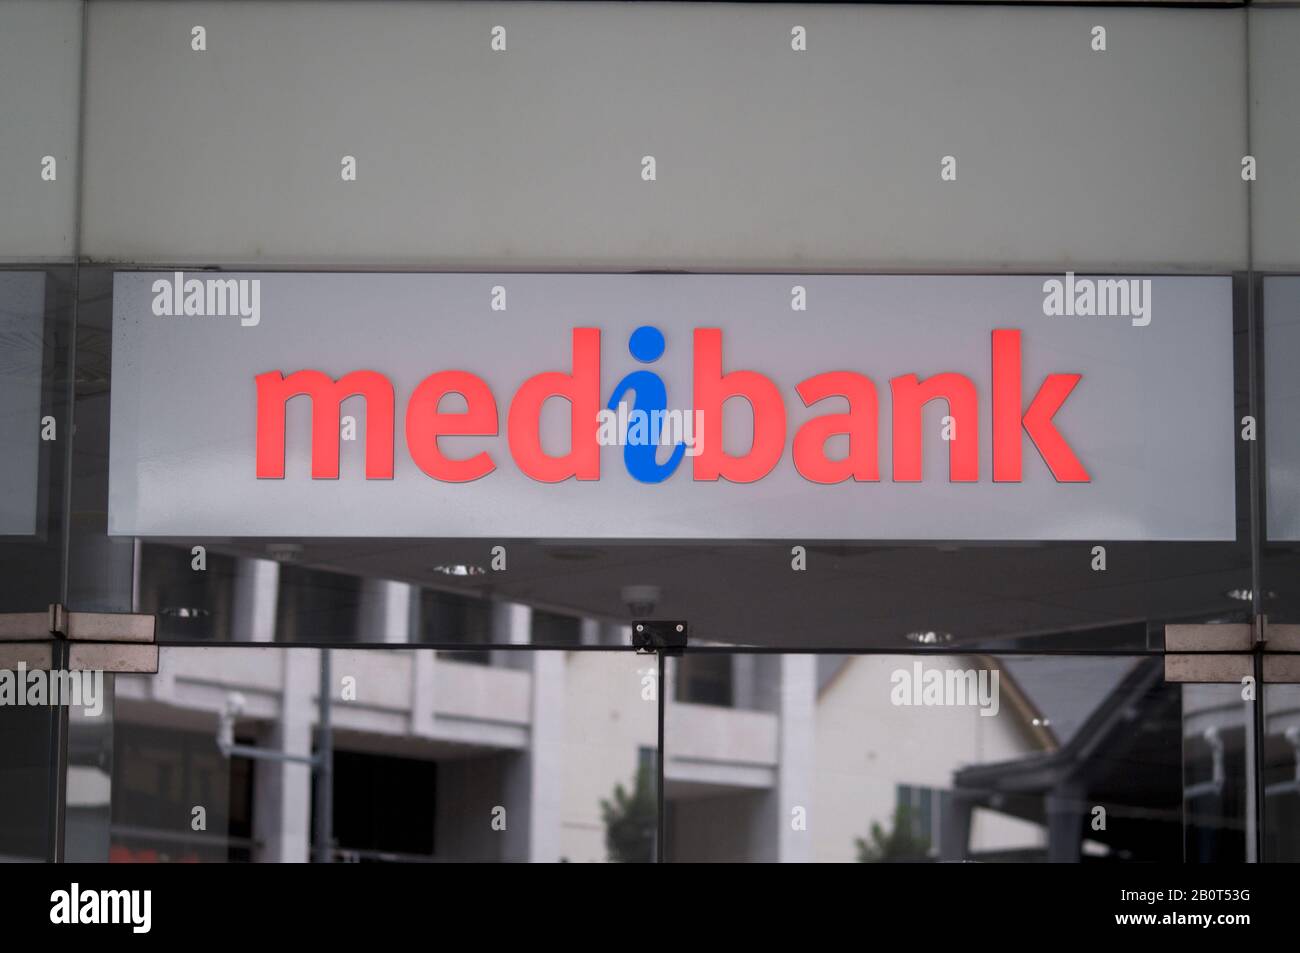 Brisbane, Queensland, Australien - 26. Januar 2020: Blick auf das Medibank-Logo vor dem Ladeneingang in Brisbane. Medibank ist eine Aust Stockfoto